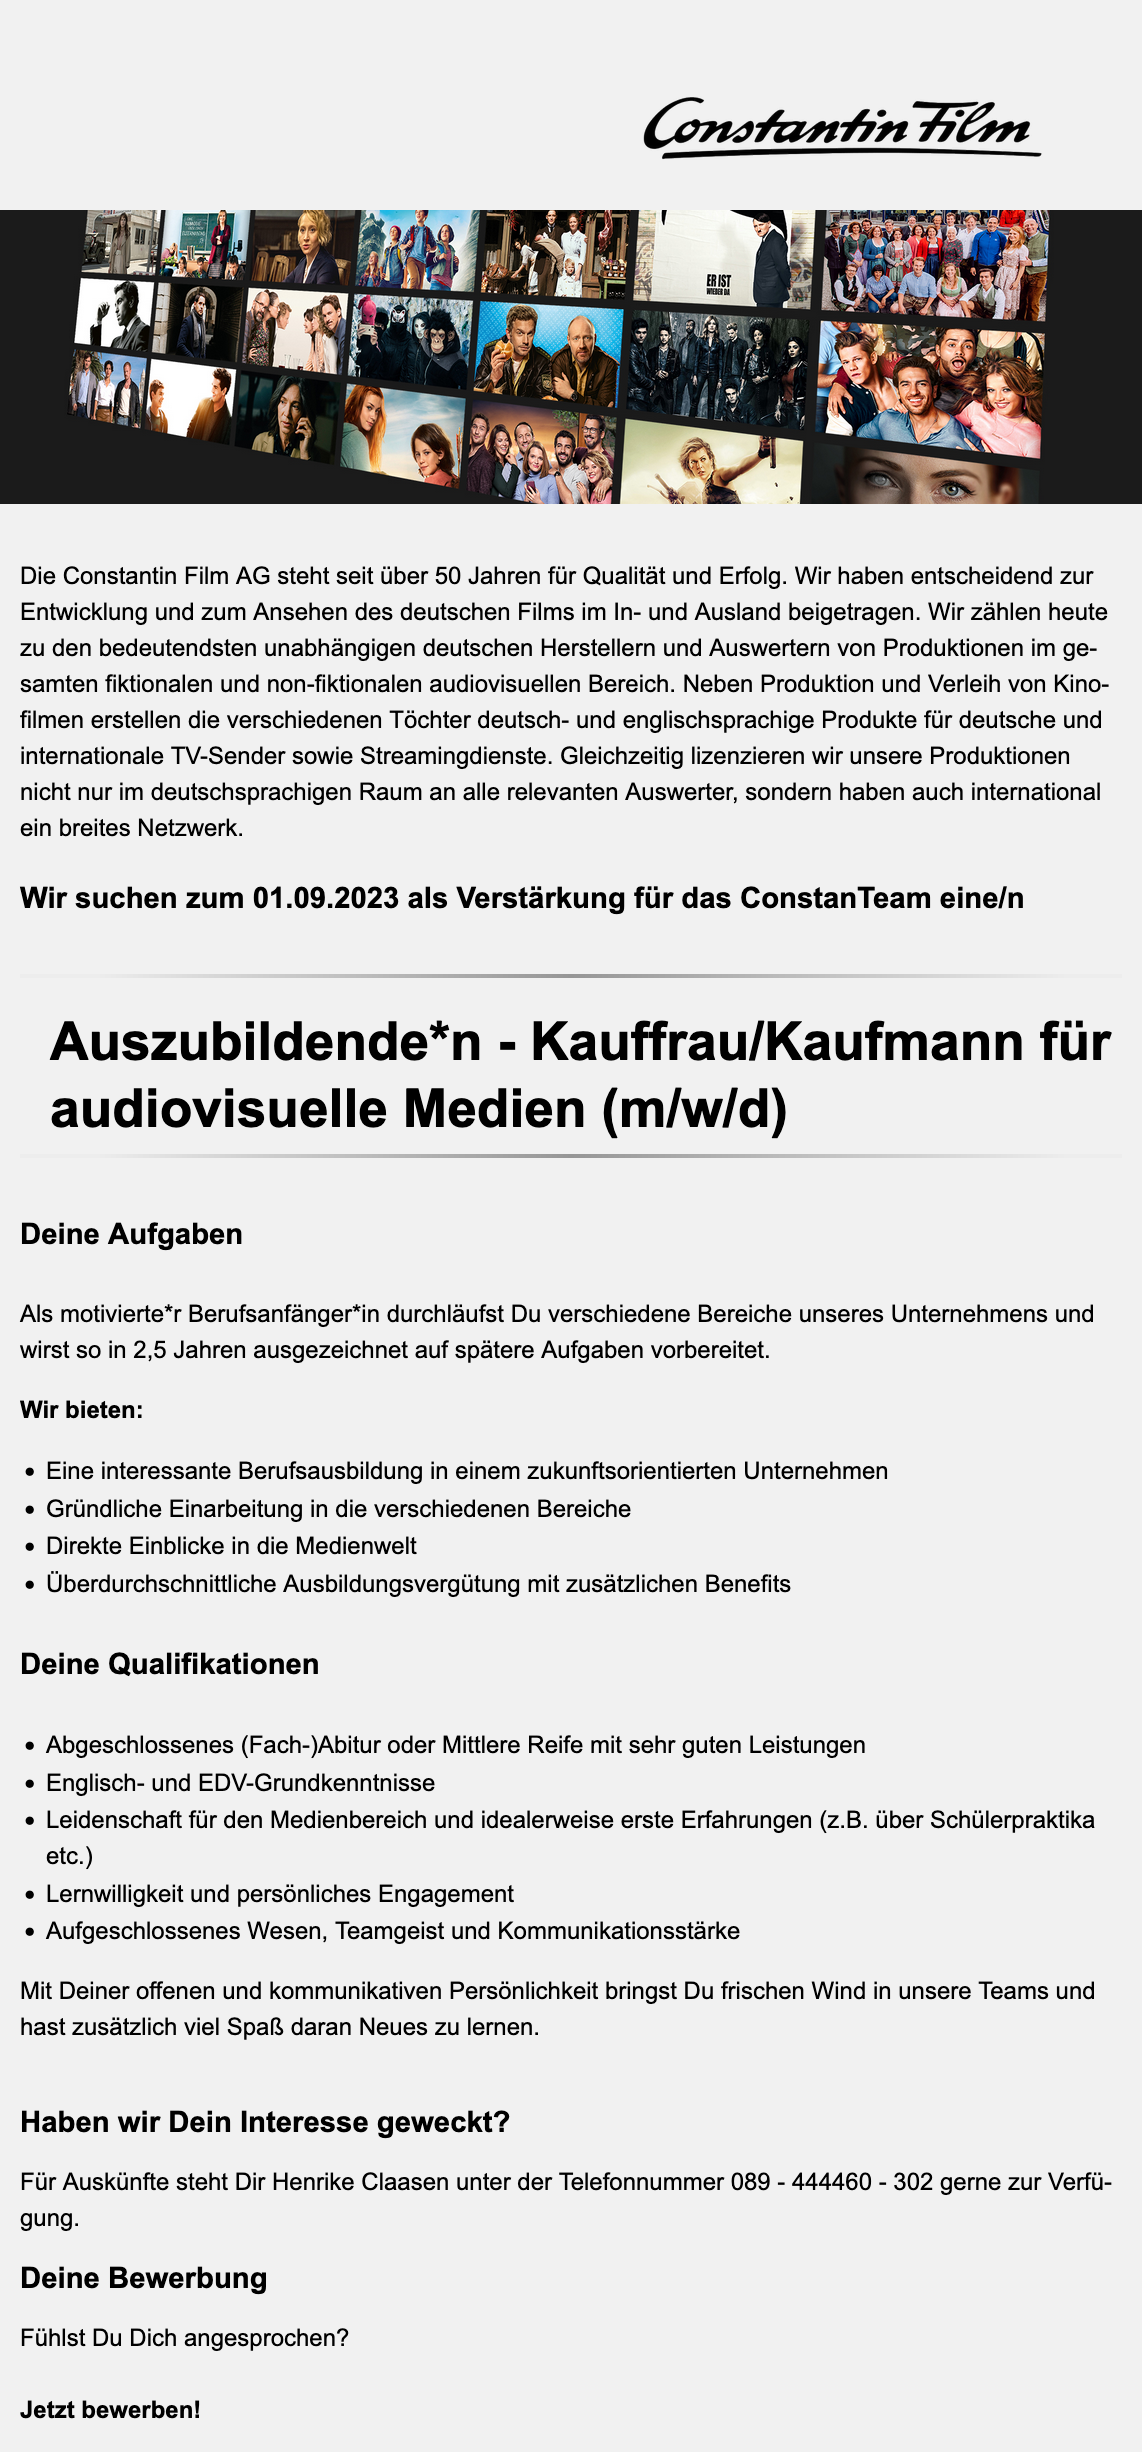 Auszubildende*n - Kauffrau/Kaufmann für audiovisuelle Medien (m/w/d)